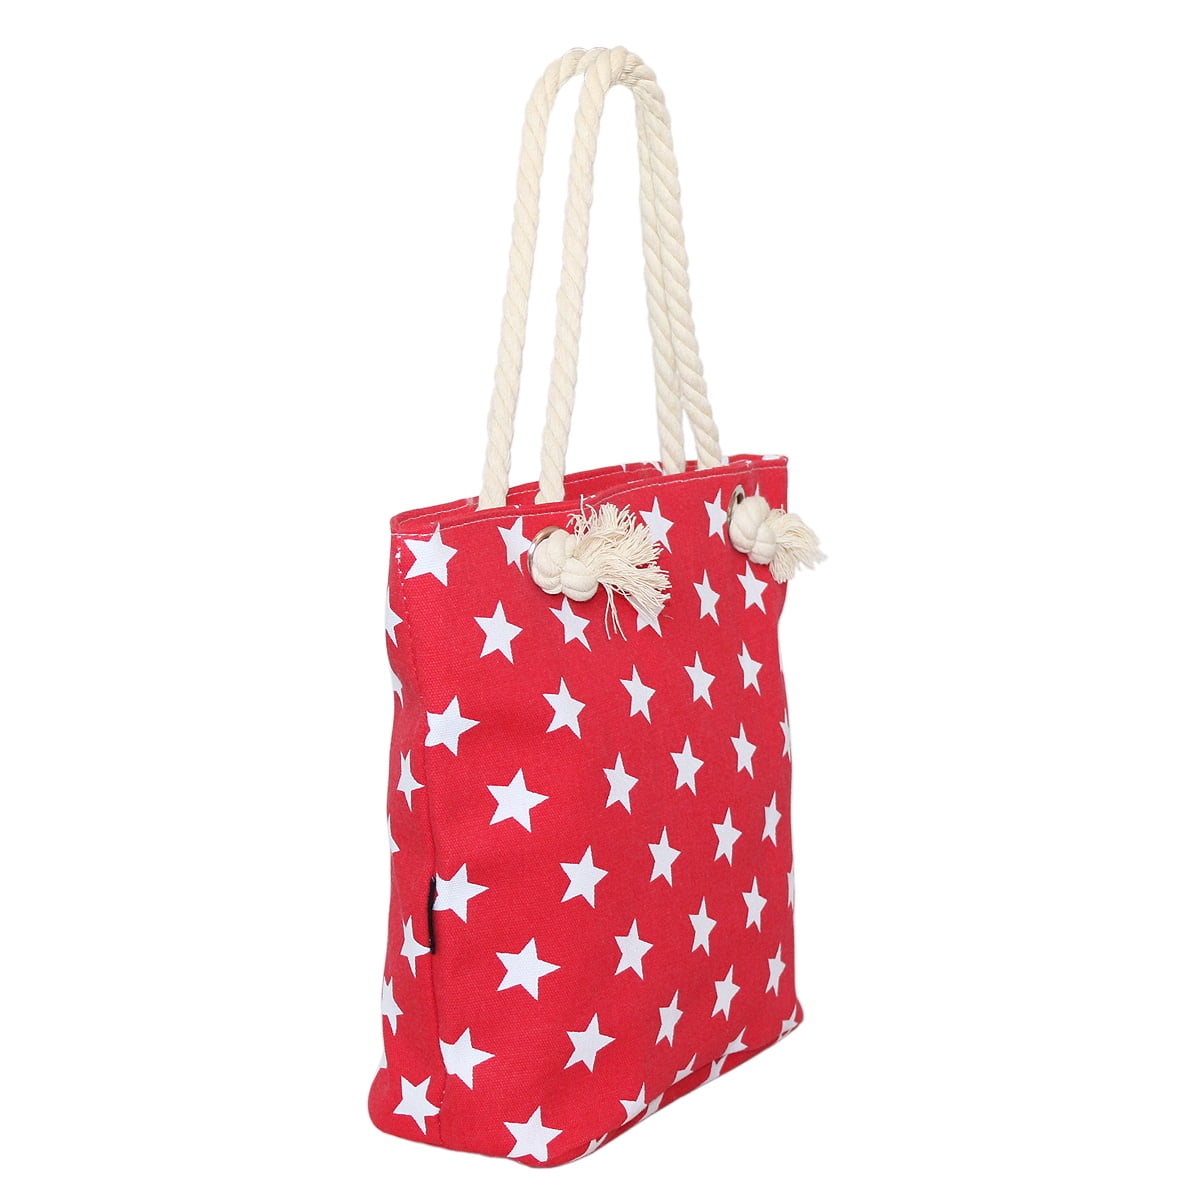 Premium Large Star Patterned Canvas Tote Shoulder Bag Handbag